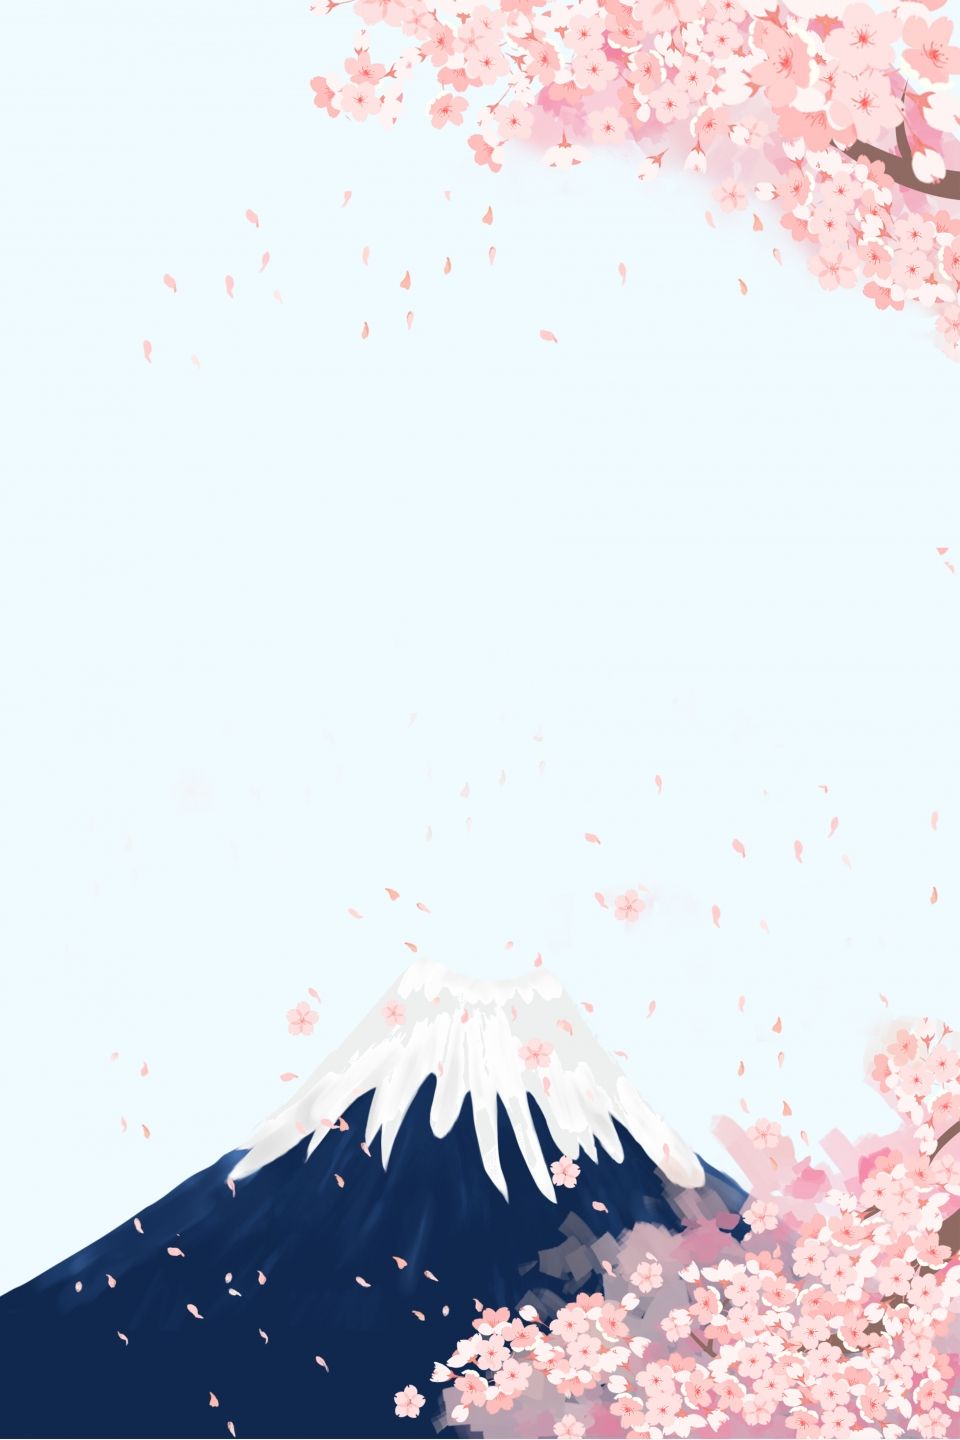 Background hoa anh đào Nhật Bản